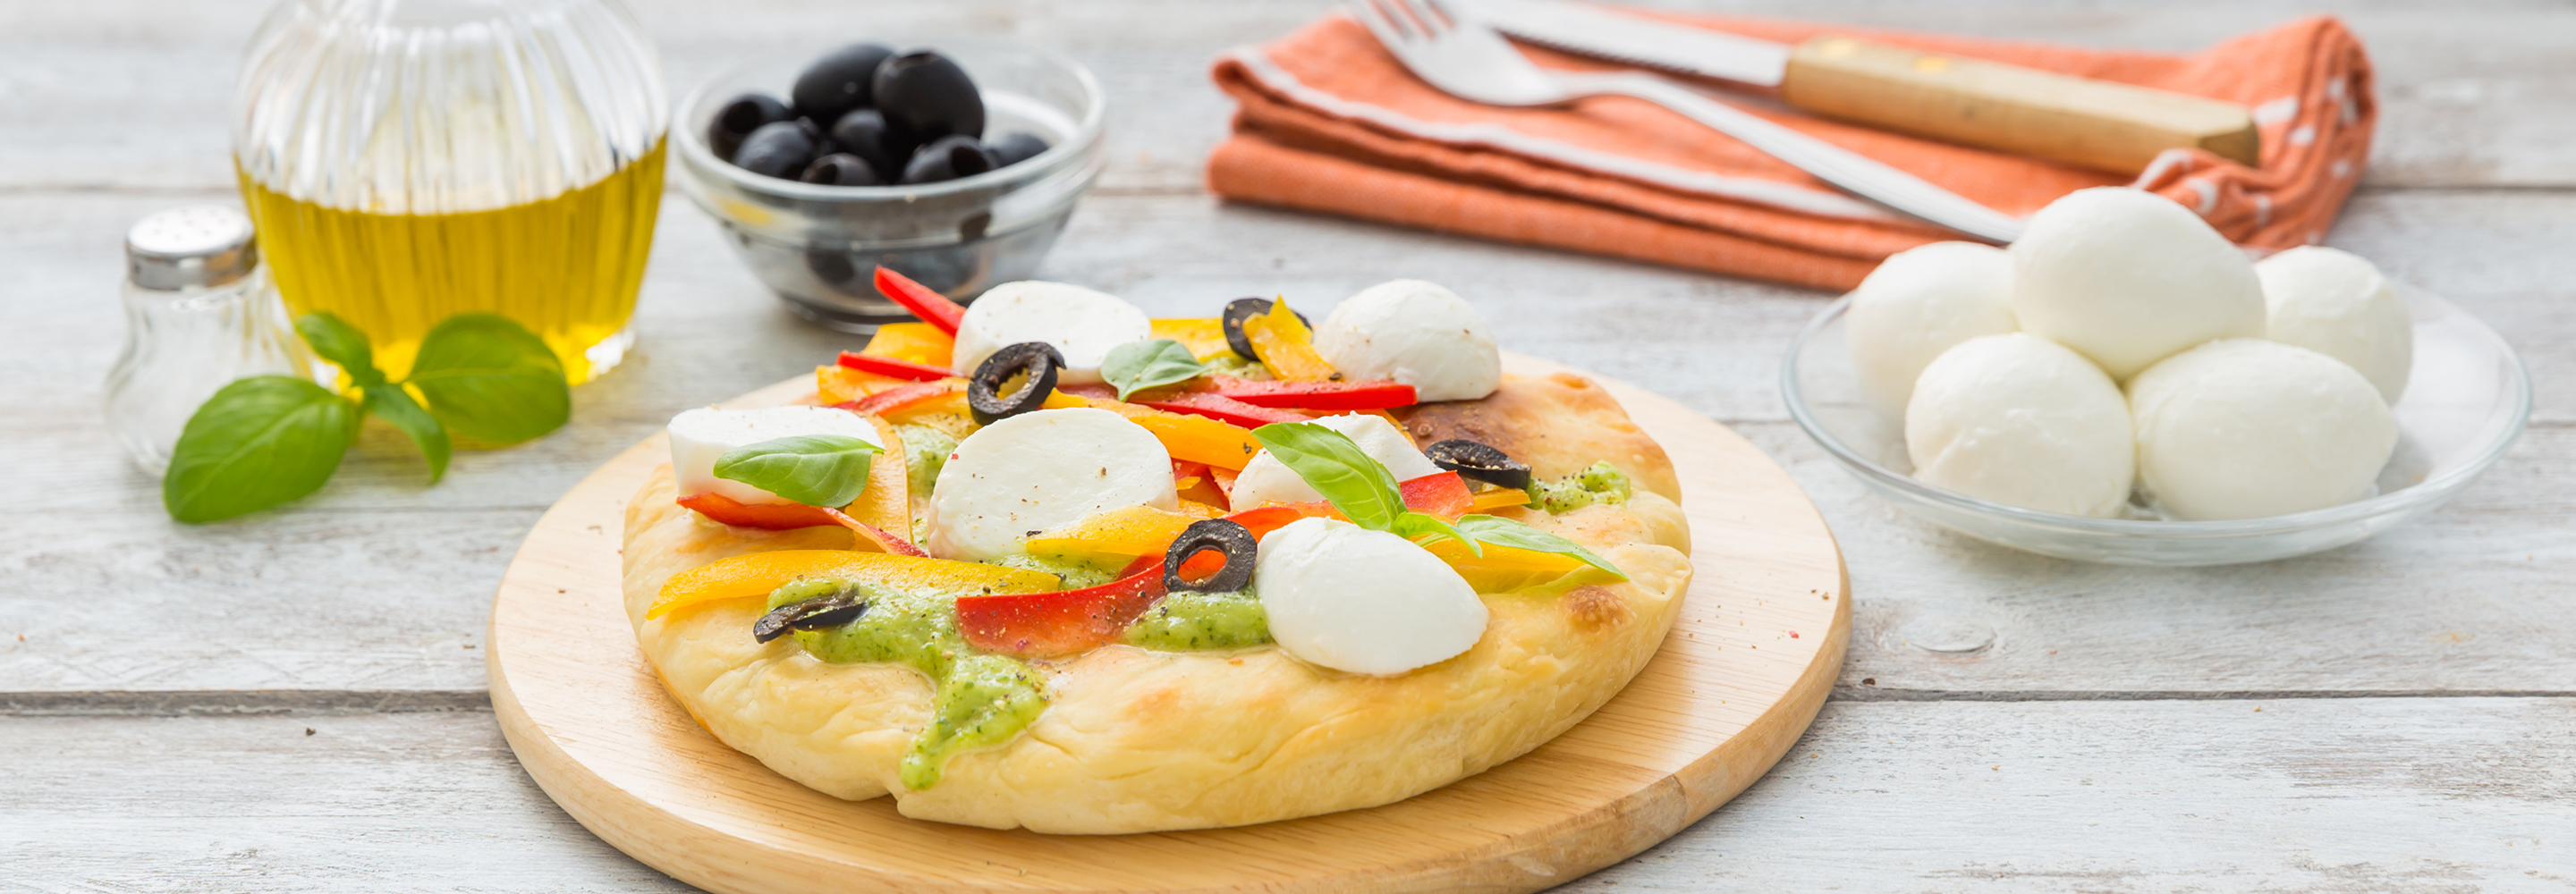 Pizza z chrupiącymi warzywami i Mozzarellą - Galbani – od ponad 140 lat dostarczamy najlepsze włoskie smaki na talerze całego świata